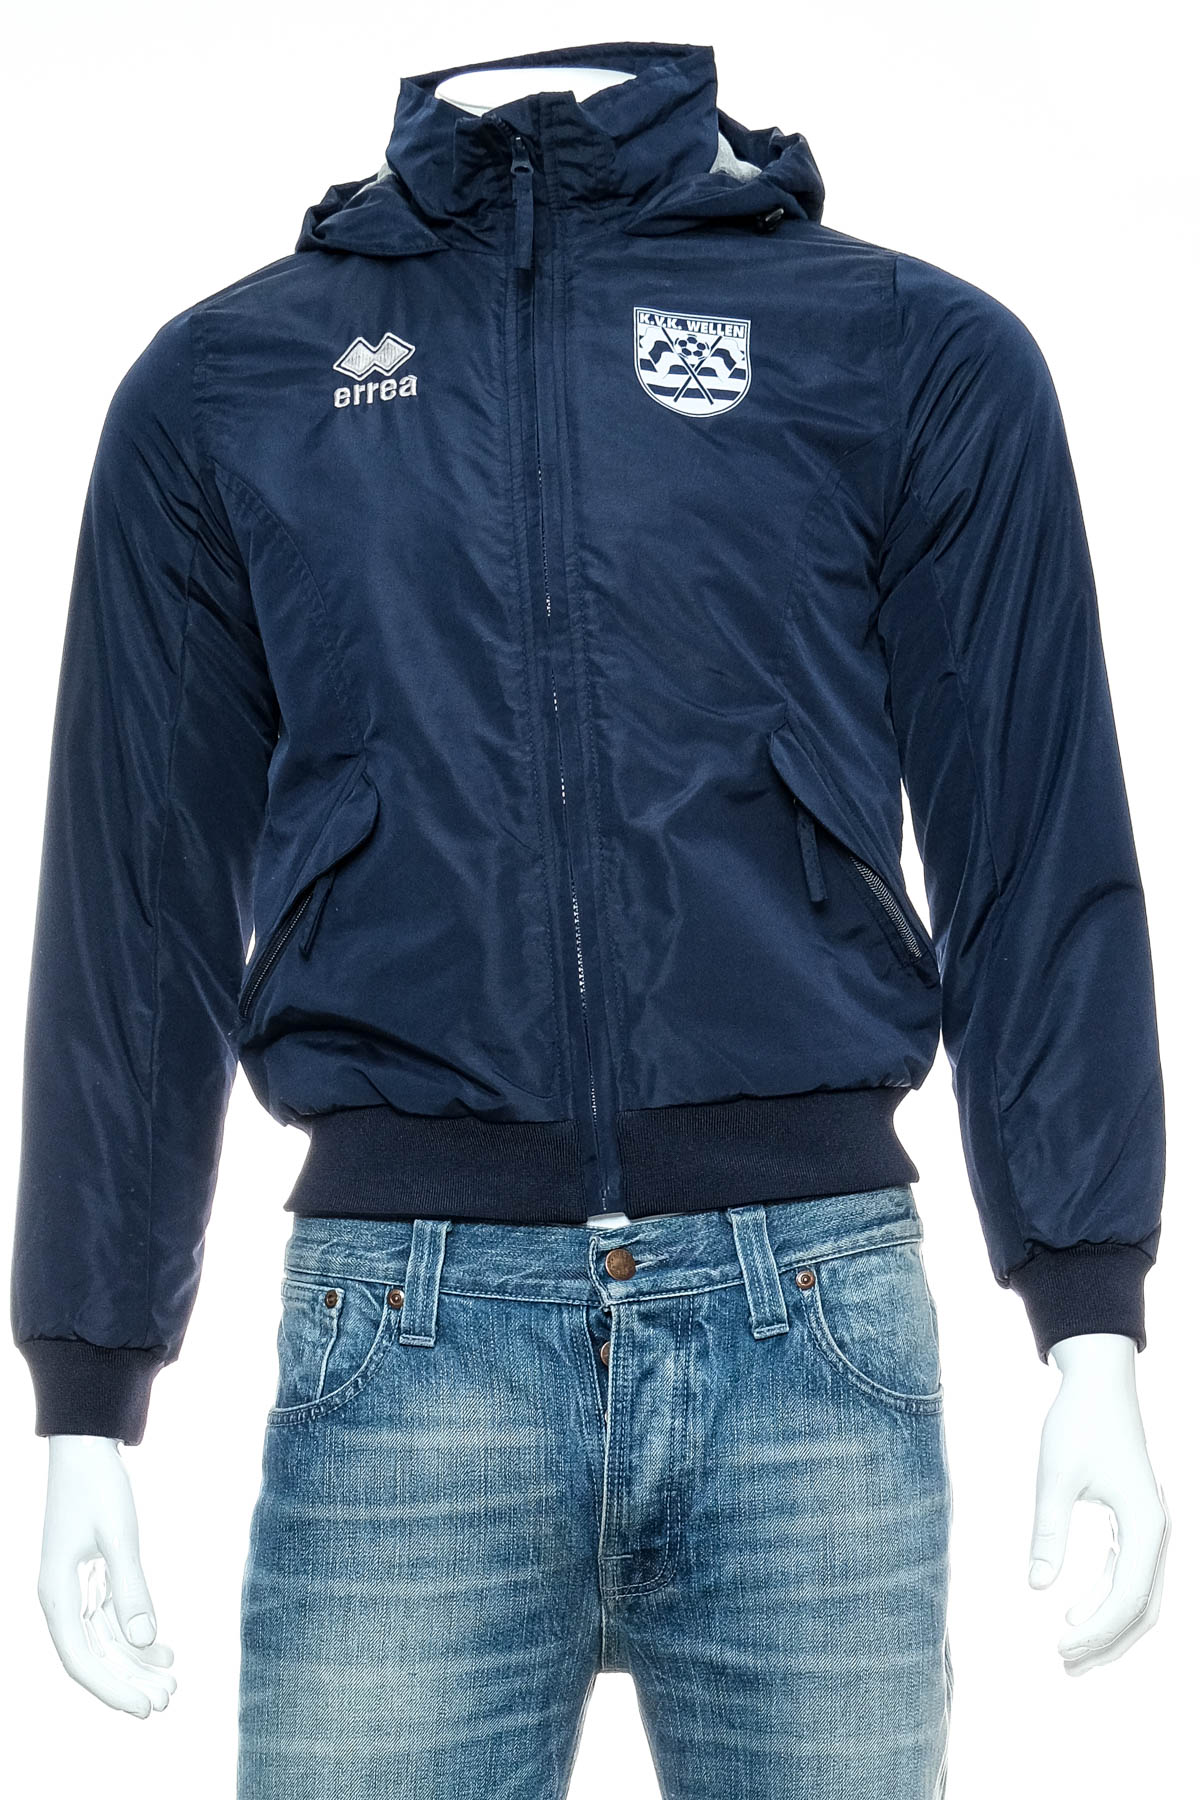 Men's jacket - Errea - 0